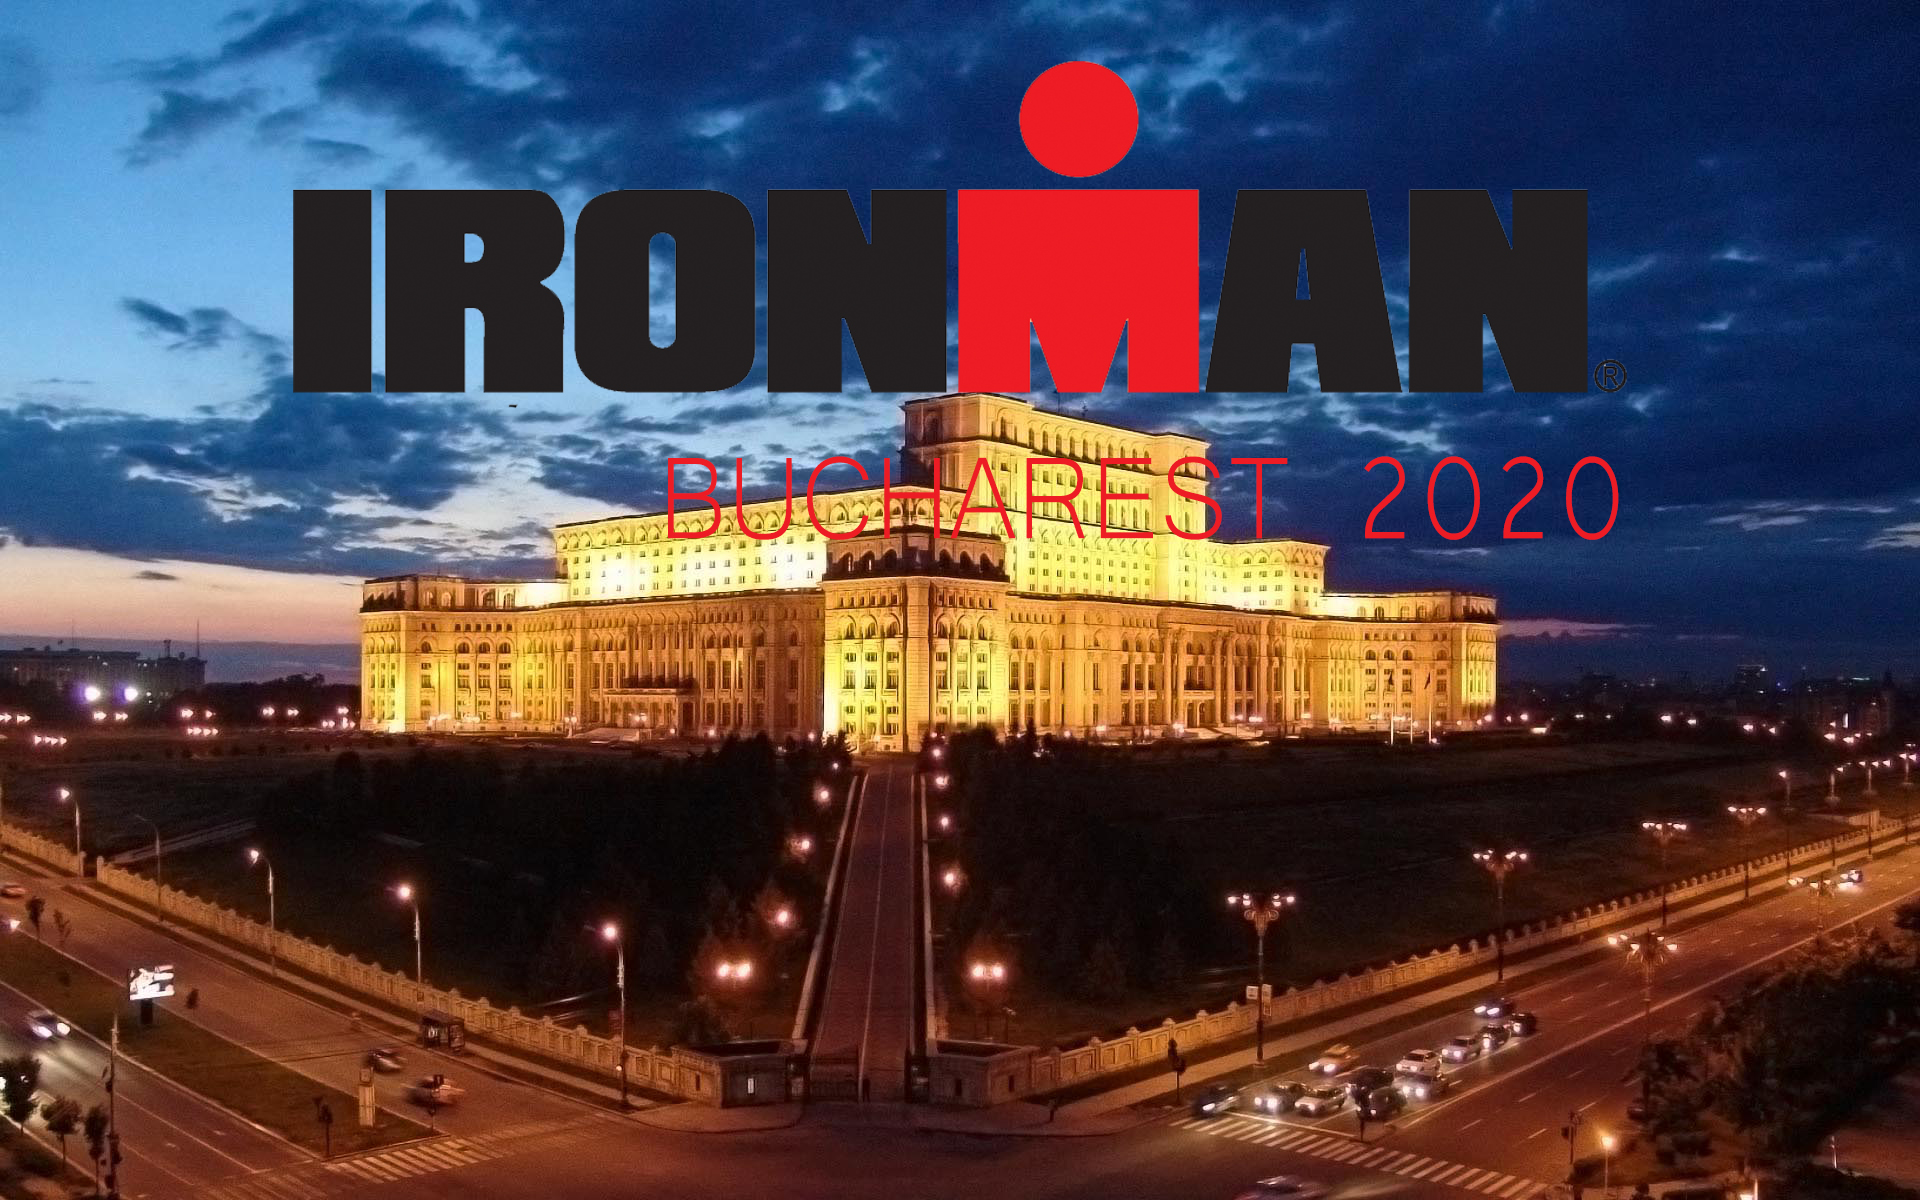 Ironman Bucharest 2020